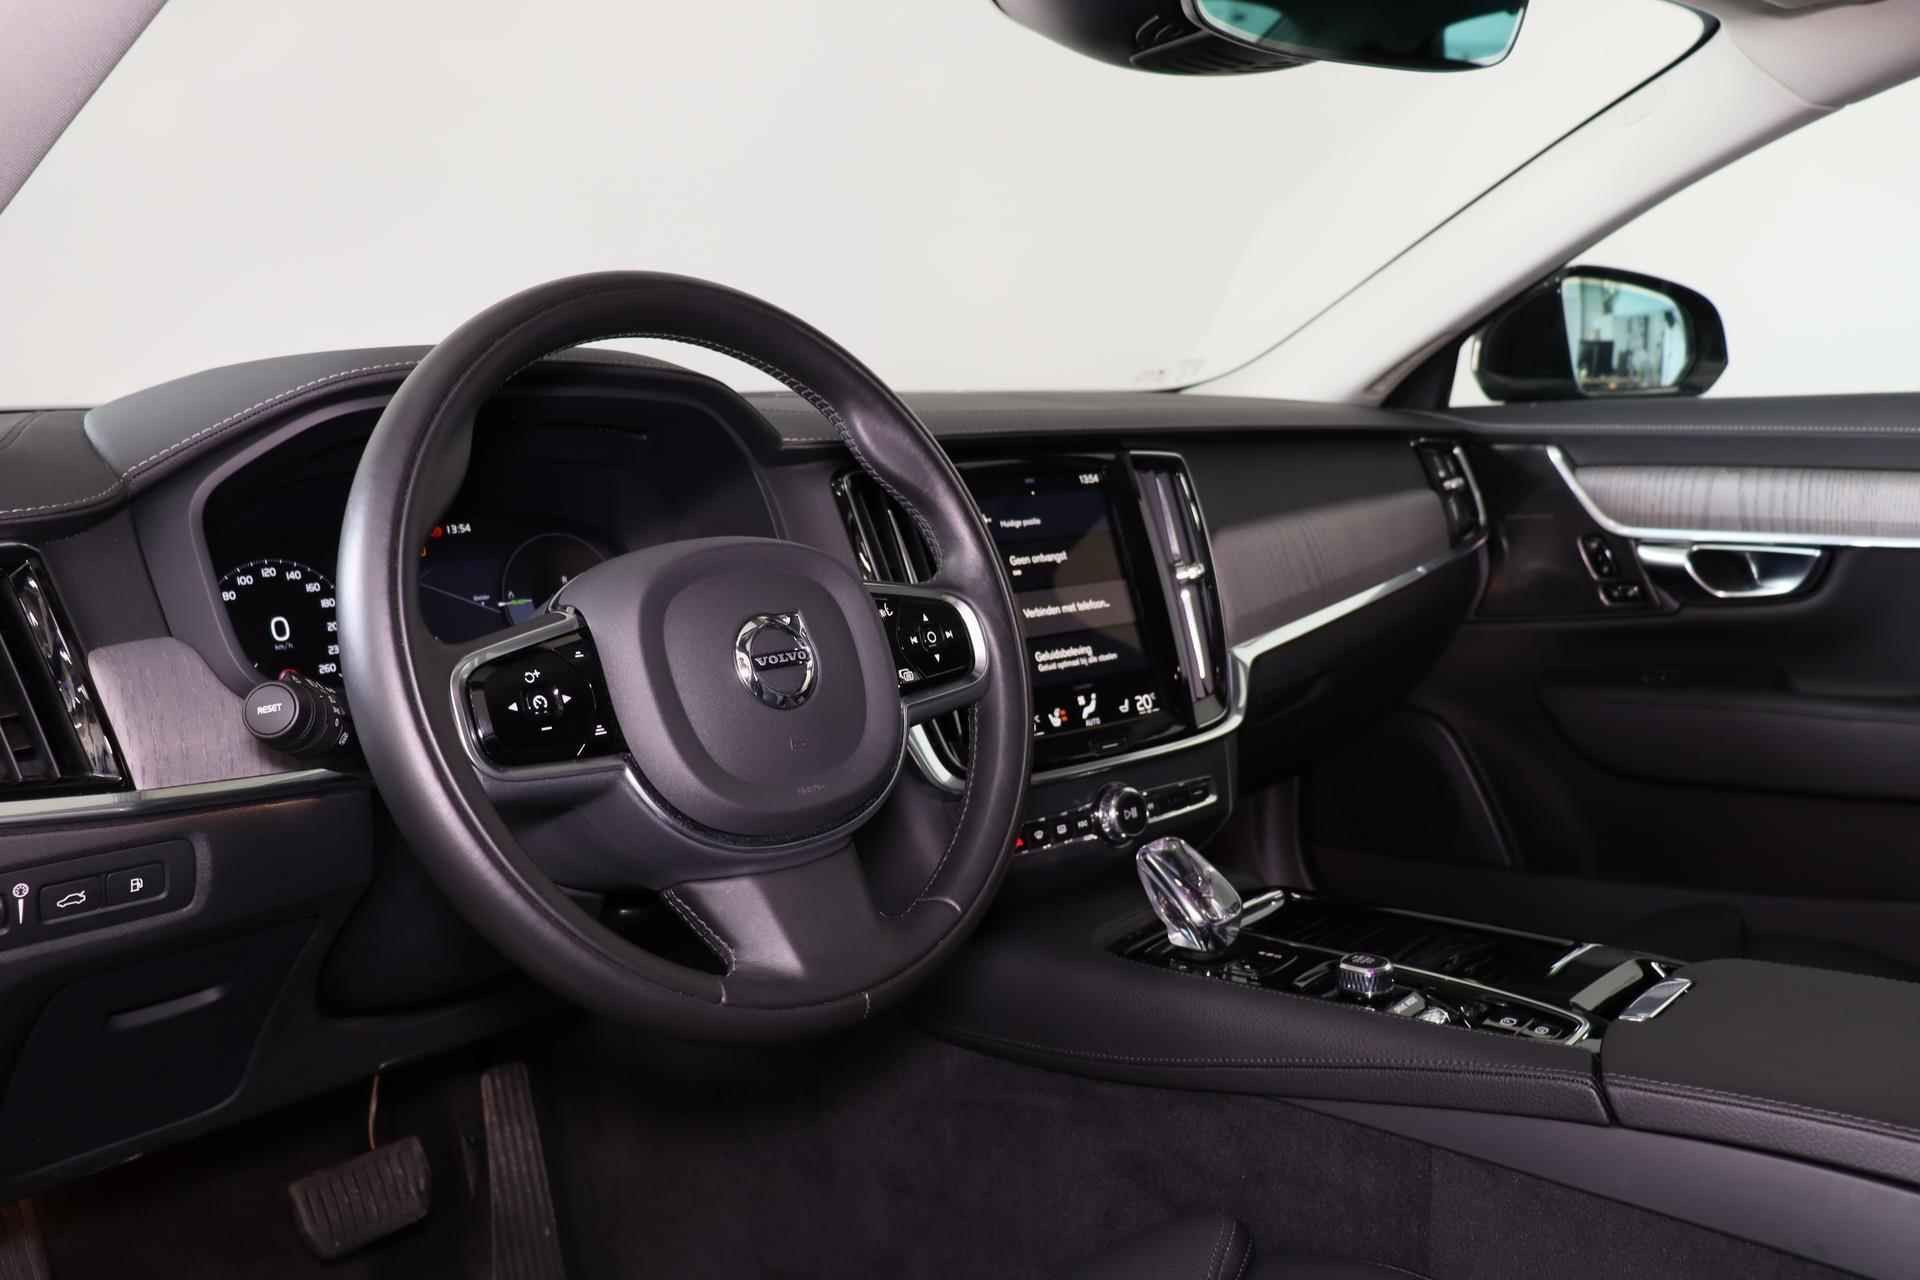 Volvo S90 T8 AWD Inscription - IntelliSafe Assist & Surround - 360º Camera - Harman/Kardon audio - Adaptieve LED koplampen - Verwarmde voorstoelen, stuur & achterbank - Parkeersensoren voor & achter - Elektr. bedienb. voorstoelen met geheugen - Standkachel - 19' LMV - 20/26